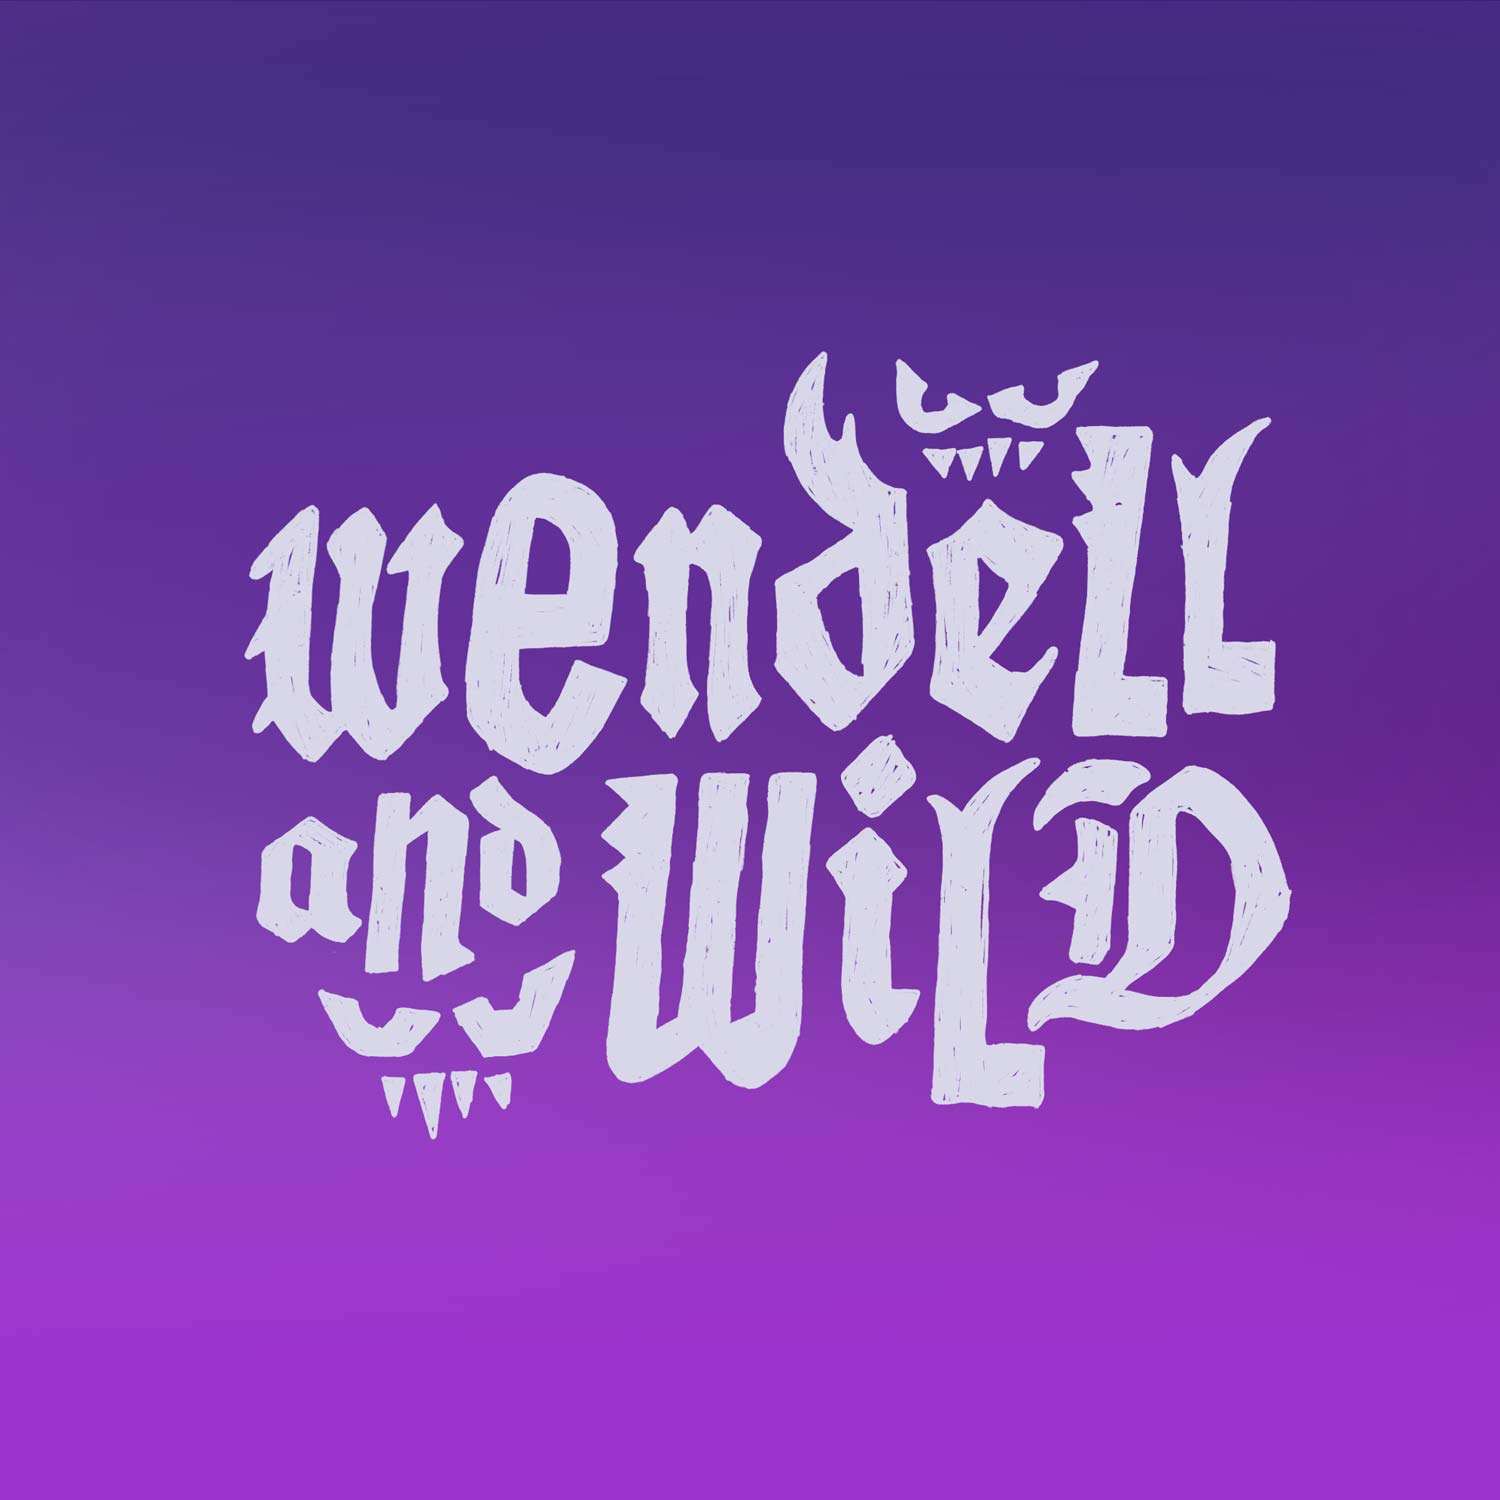 lebassis_netflix_wendell_wild_02